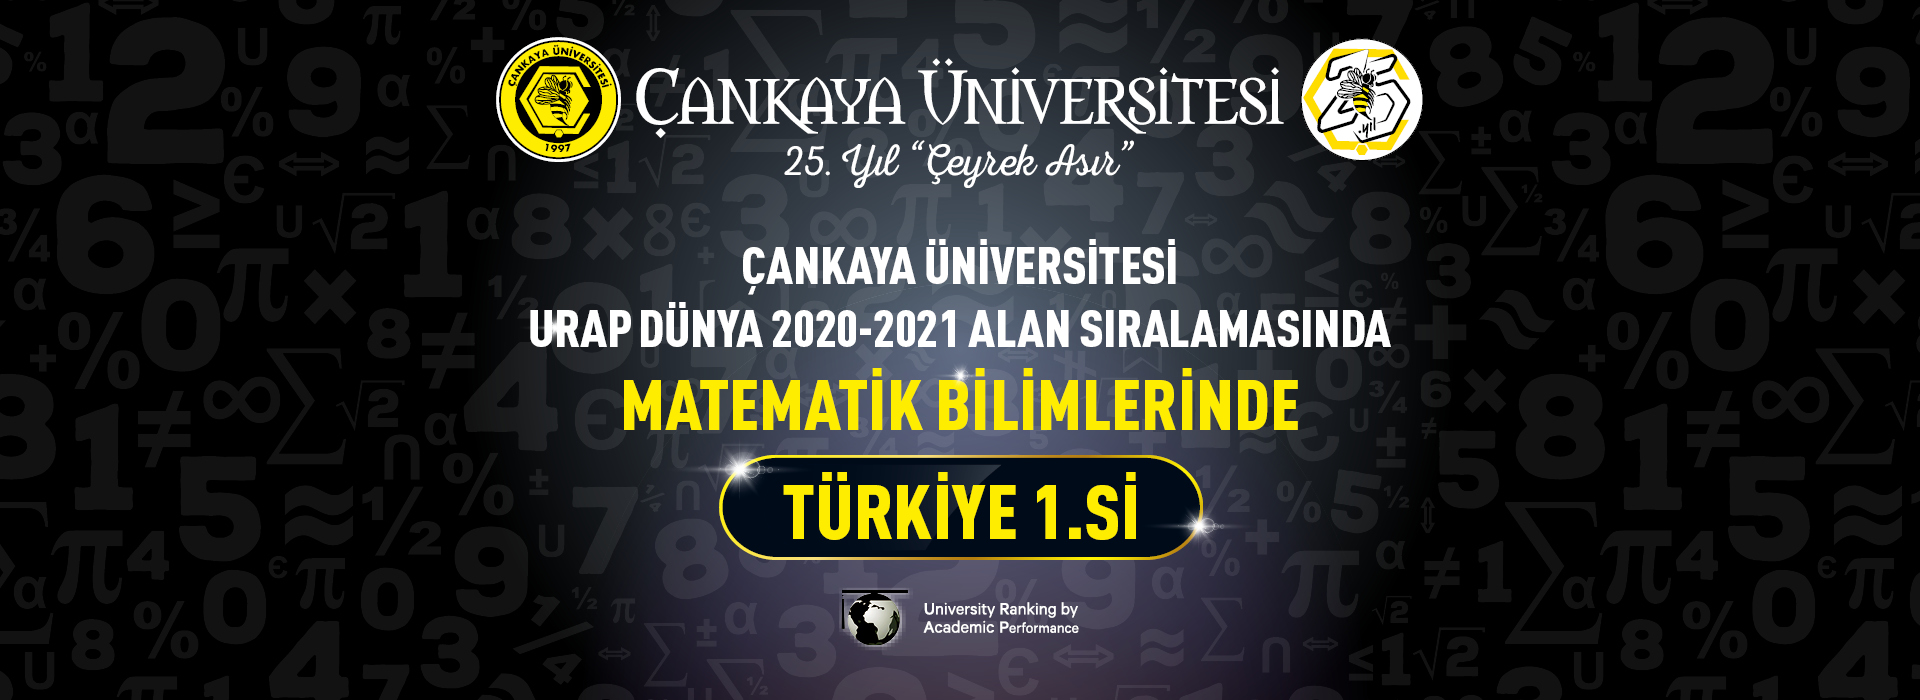 Çankaya Üniversitesi Urap Dünya 2020-2021 Alan Sıralamasında Matematik Bilimlerinde Türkiye 1.si